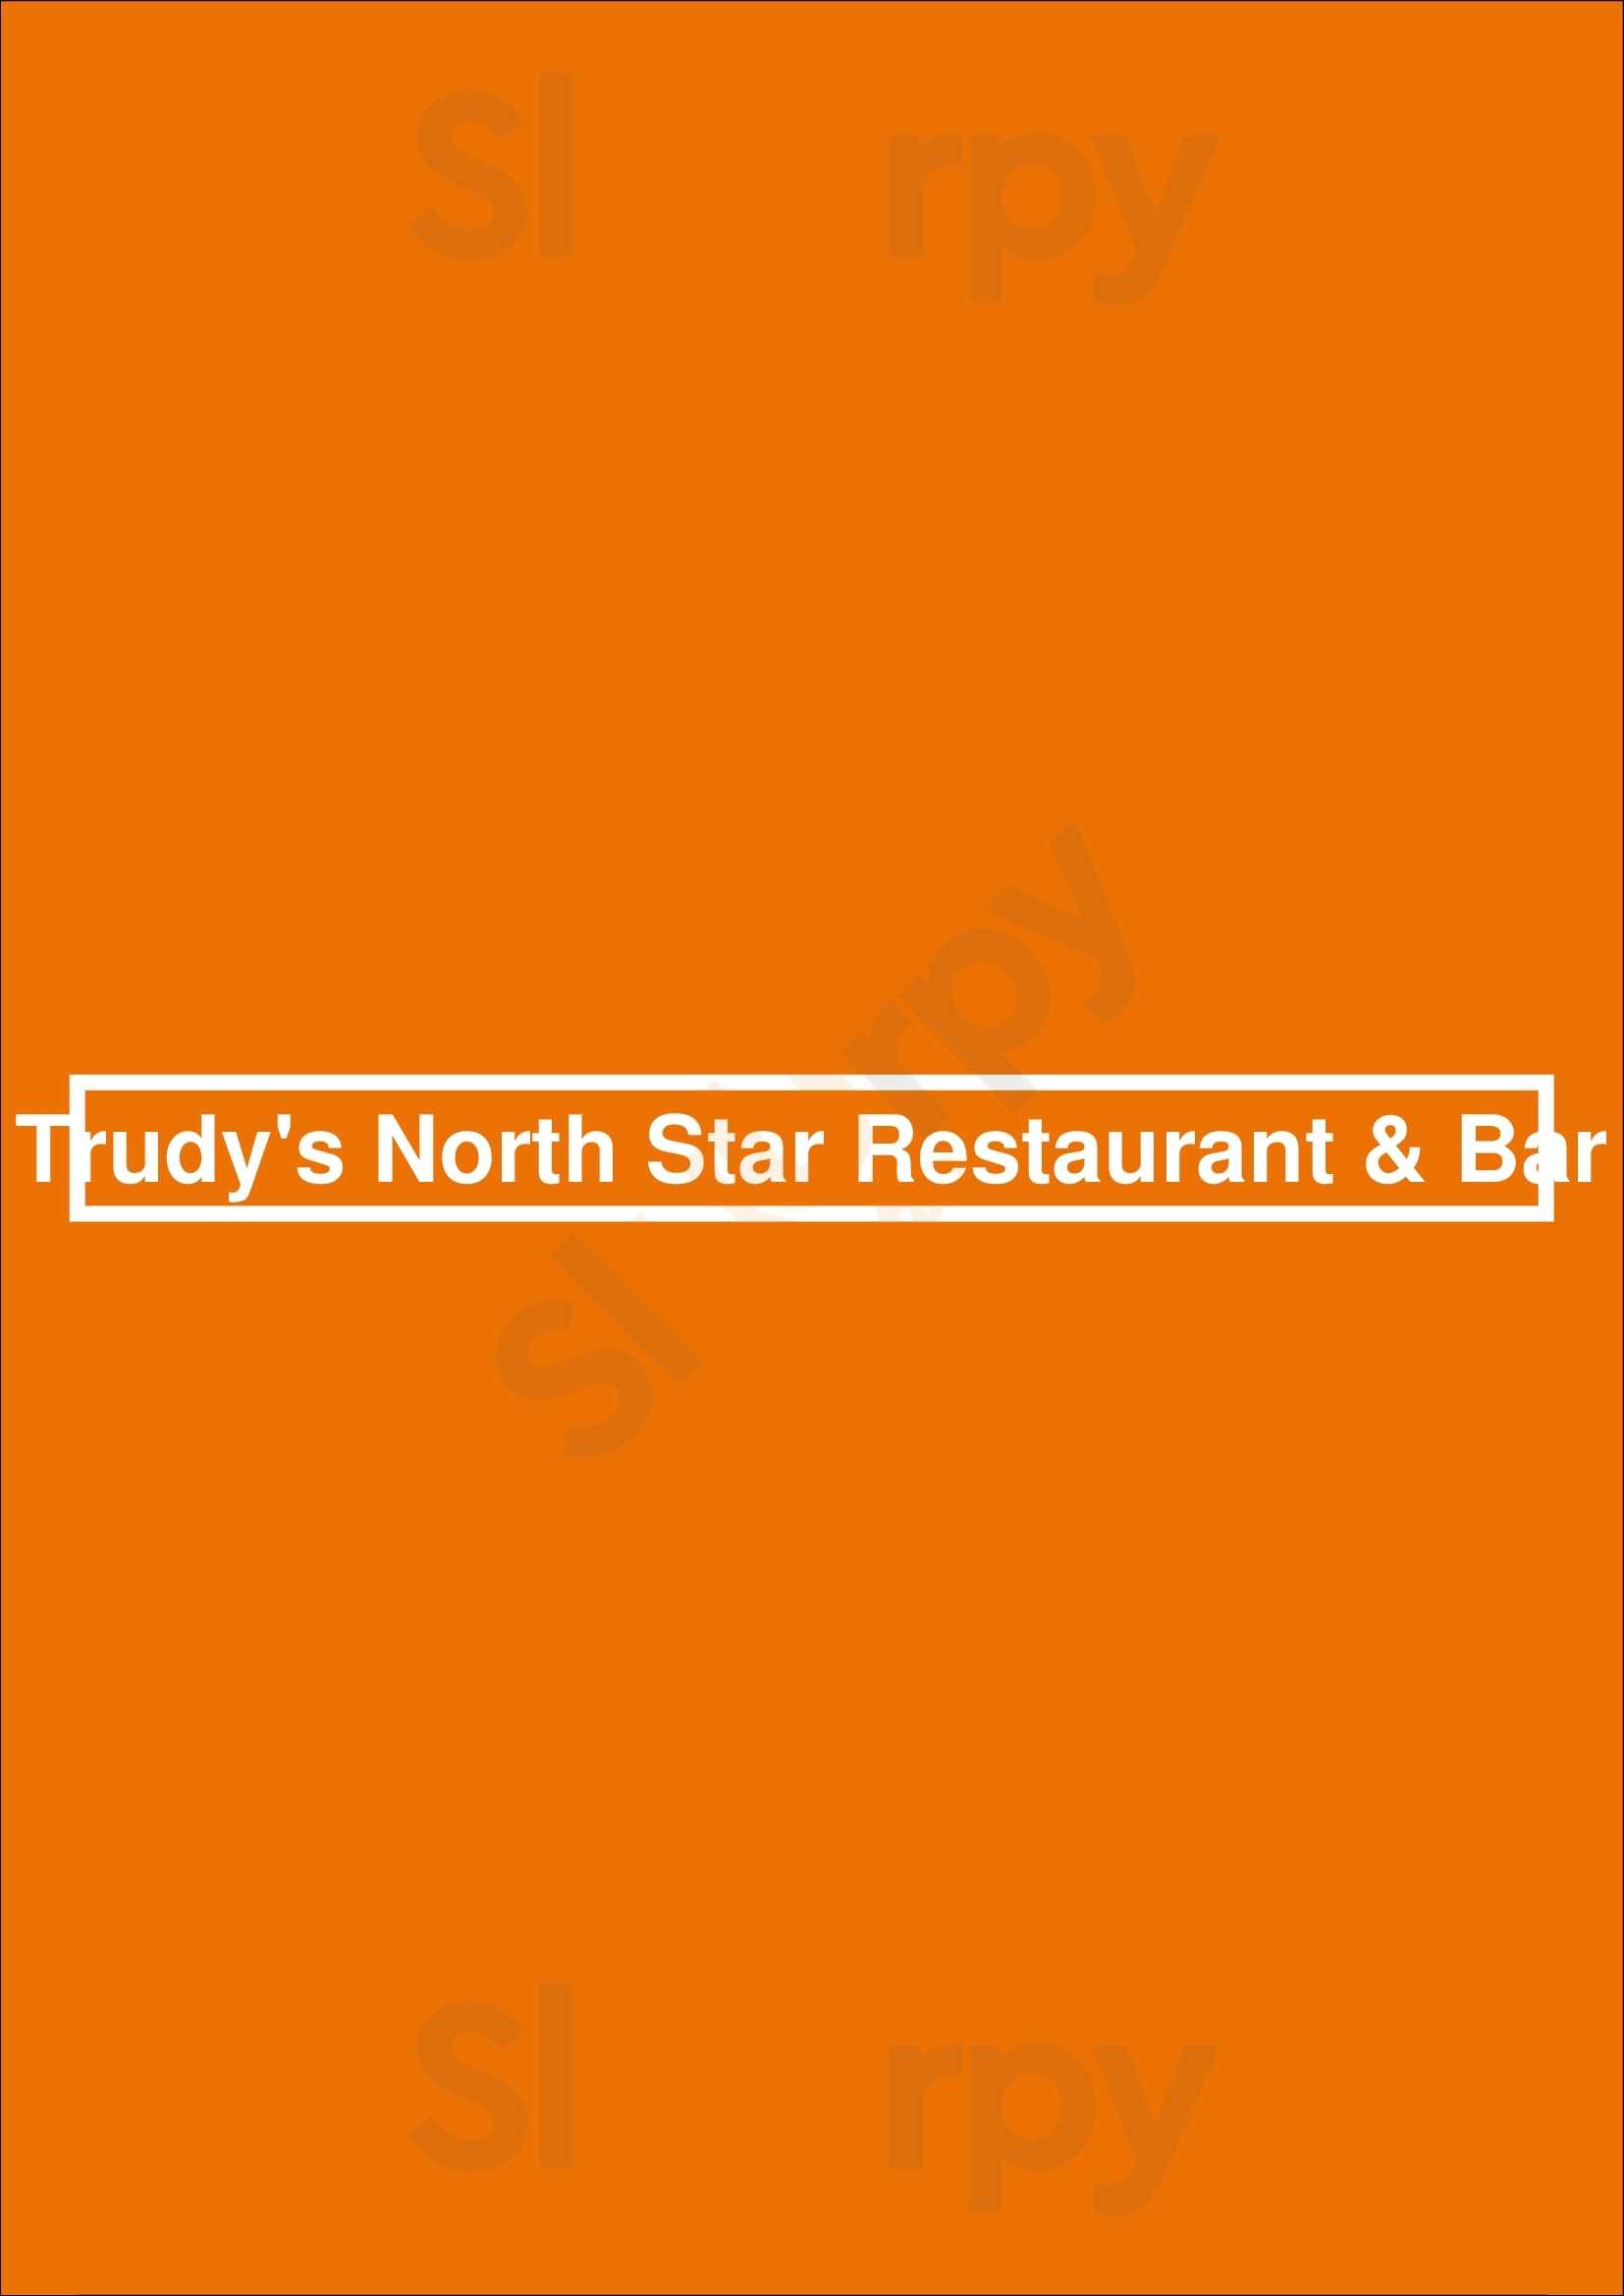 Trudy's North Star Austin Menu - 1